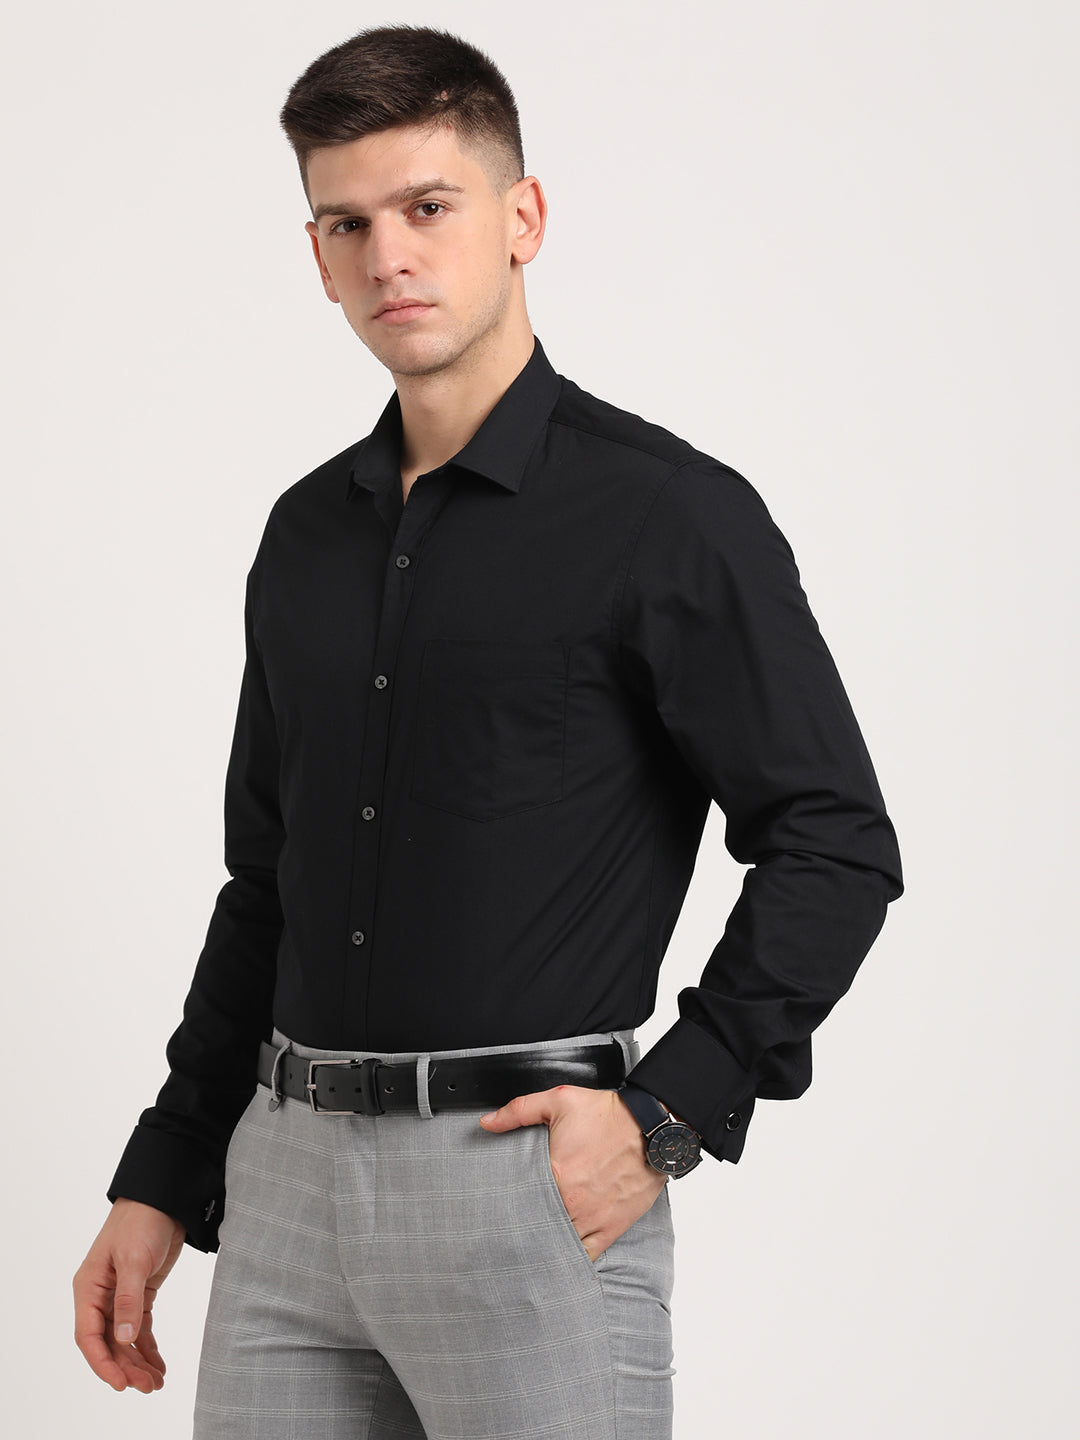 100% Cotton Black Plain Slim Fit Double Cuff Formal Shirt